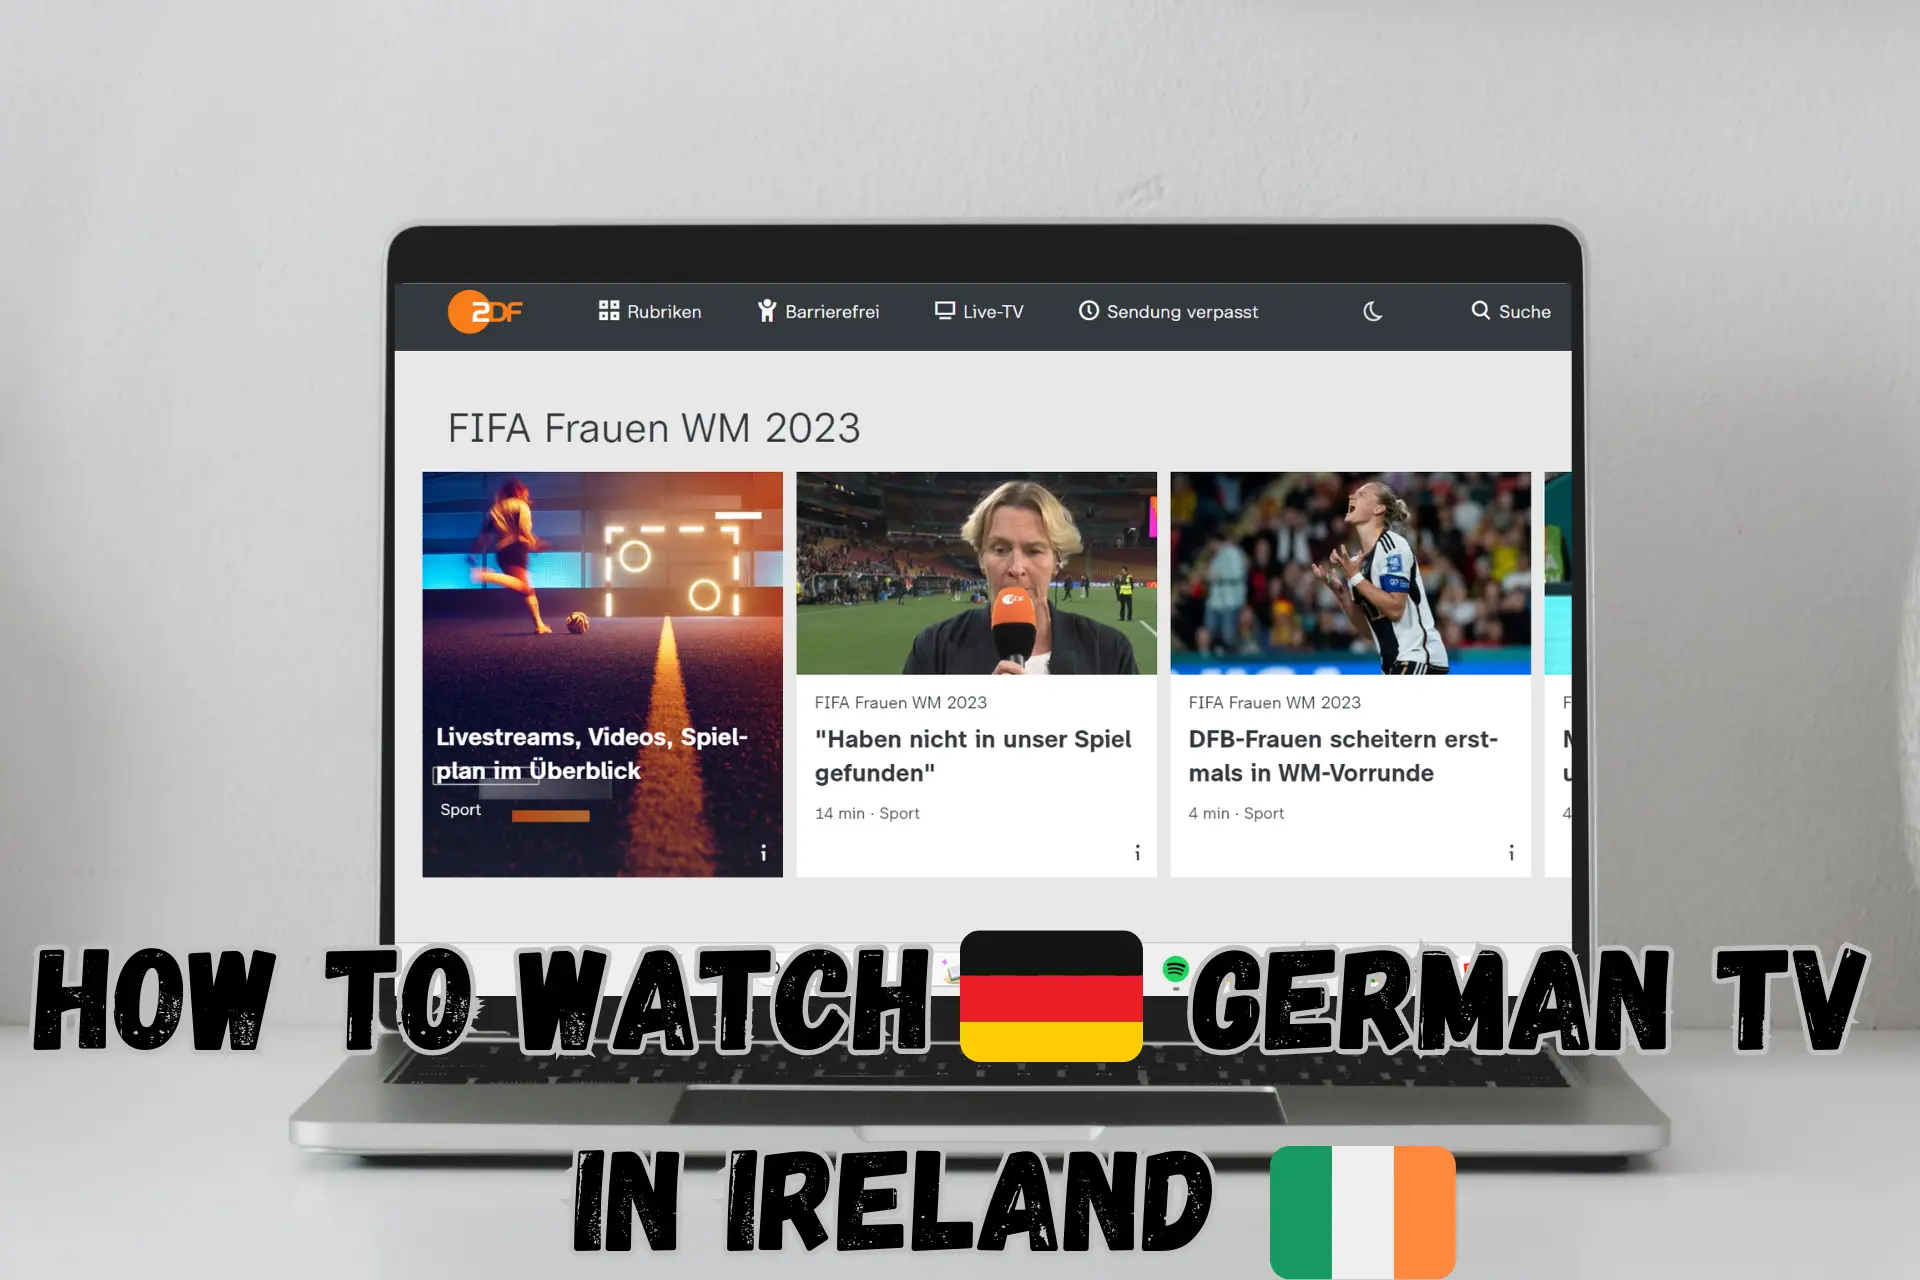 How to watch german tv in ireland